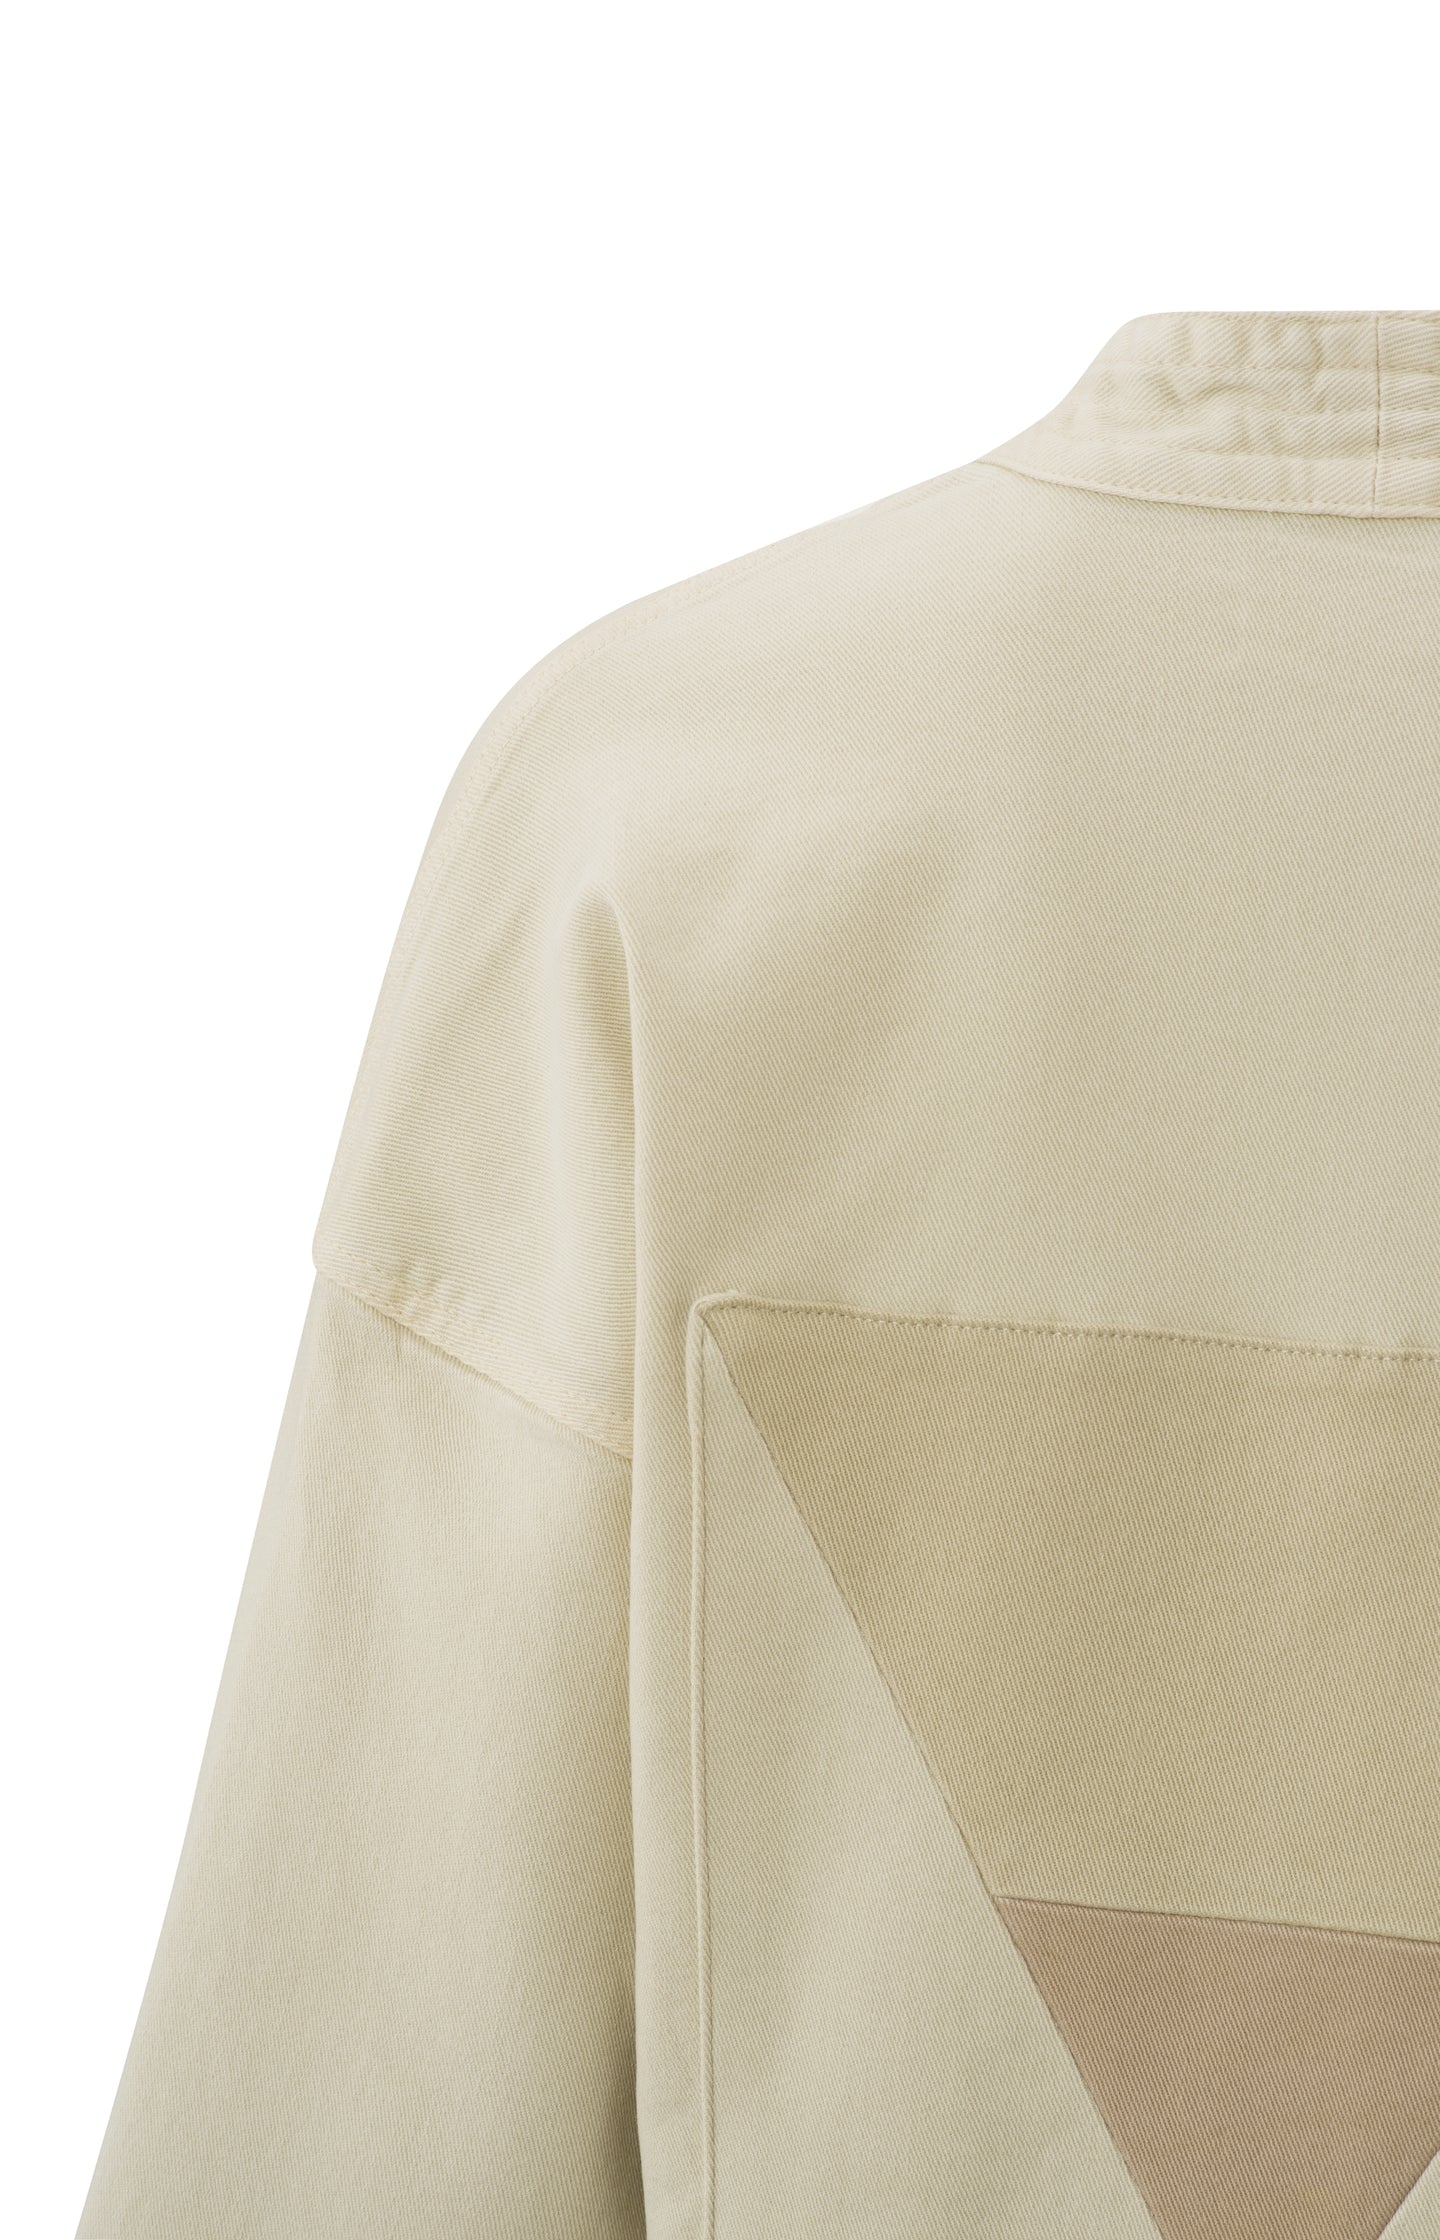 Kimono denim jacket with 7/8 sleeves, waistband and pockets